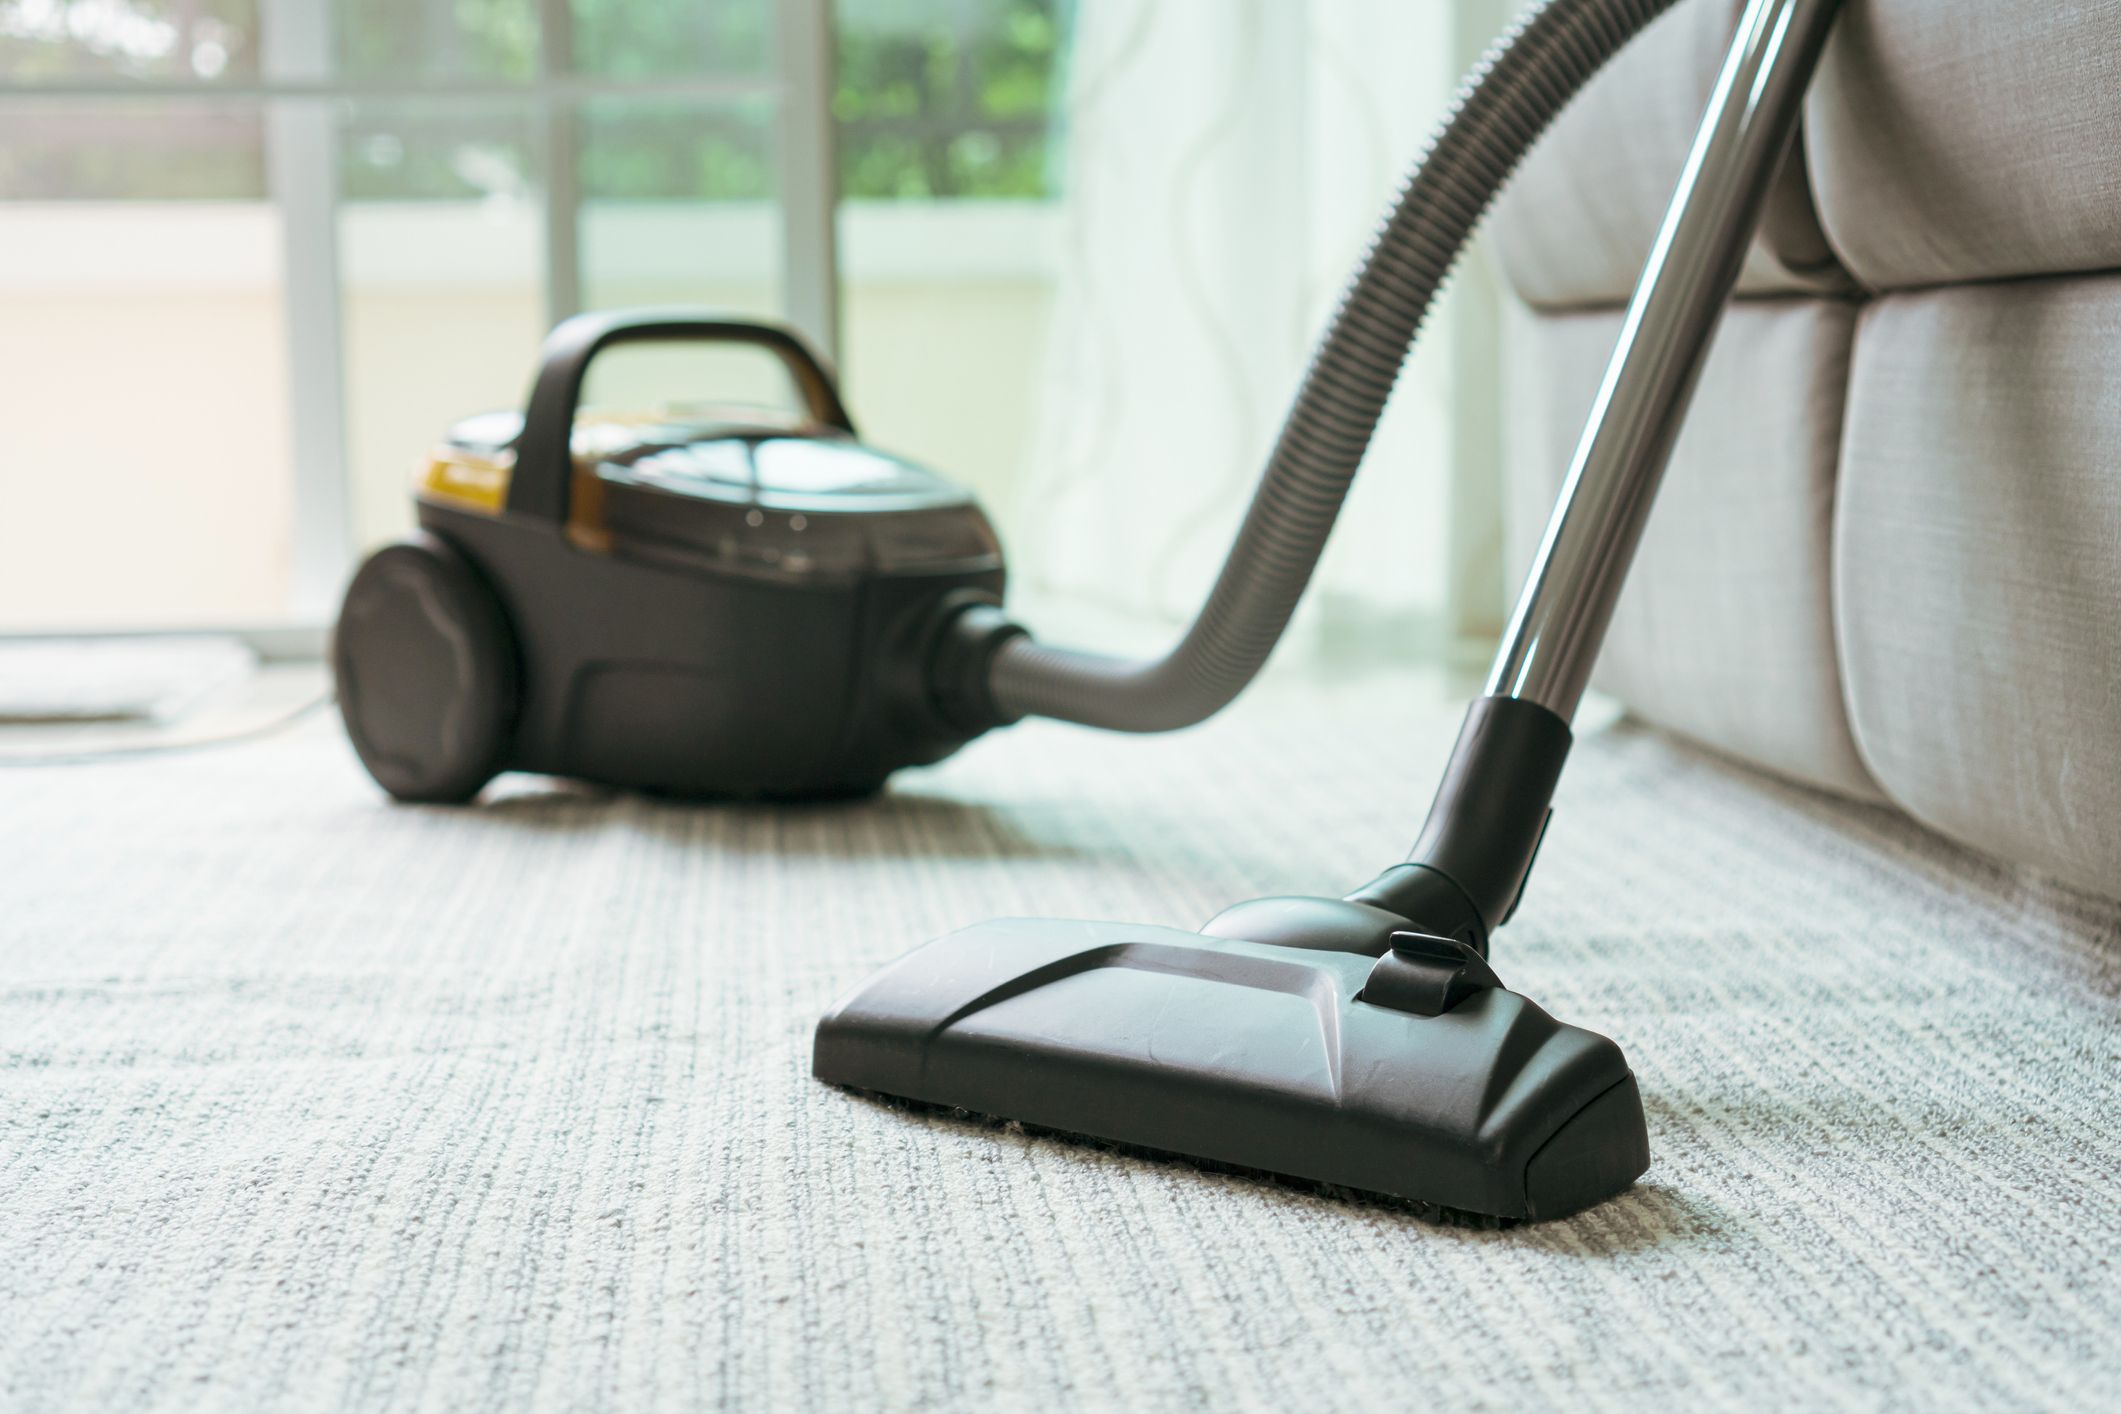 8 Best Hepa Vacuum Cleaners Reviews 2021, Best Inexpensive Vacuum Cleaner For Hardwood Floors